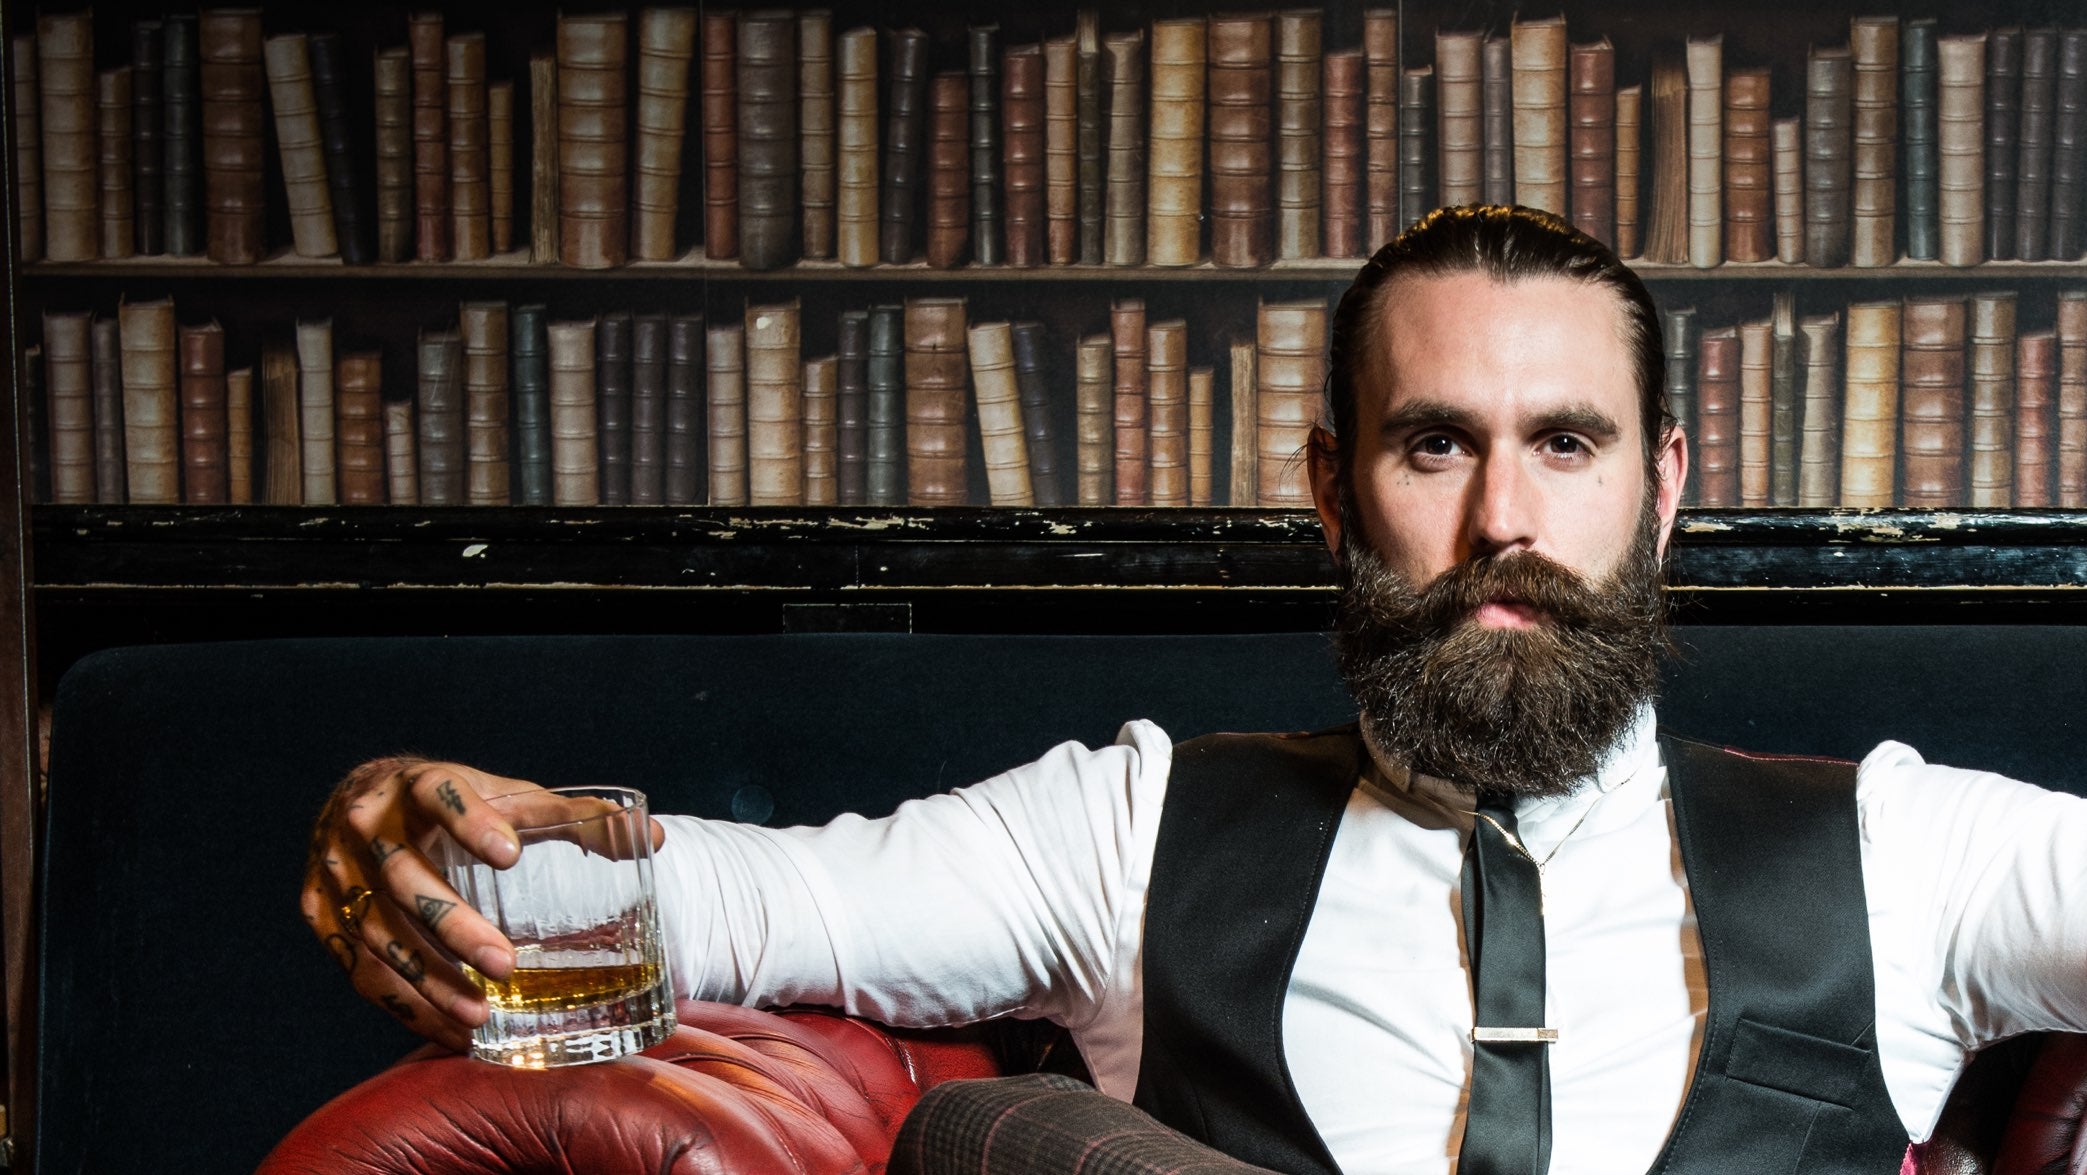 Mann i 30-årene med skjegg som sitter i en sofa foran en bokhylle og har en drink i hånden